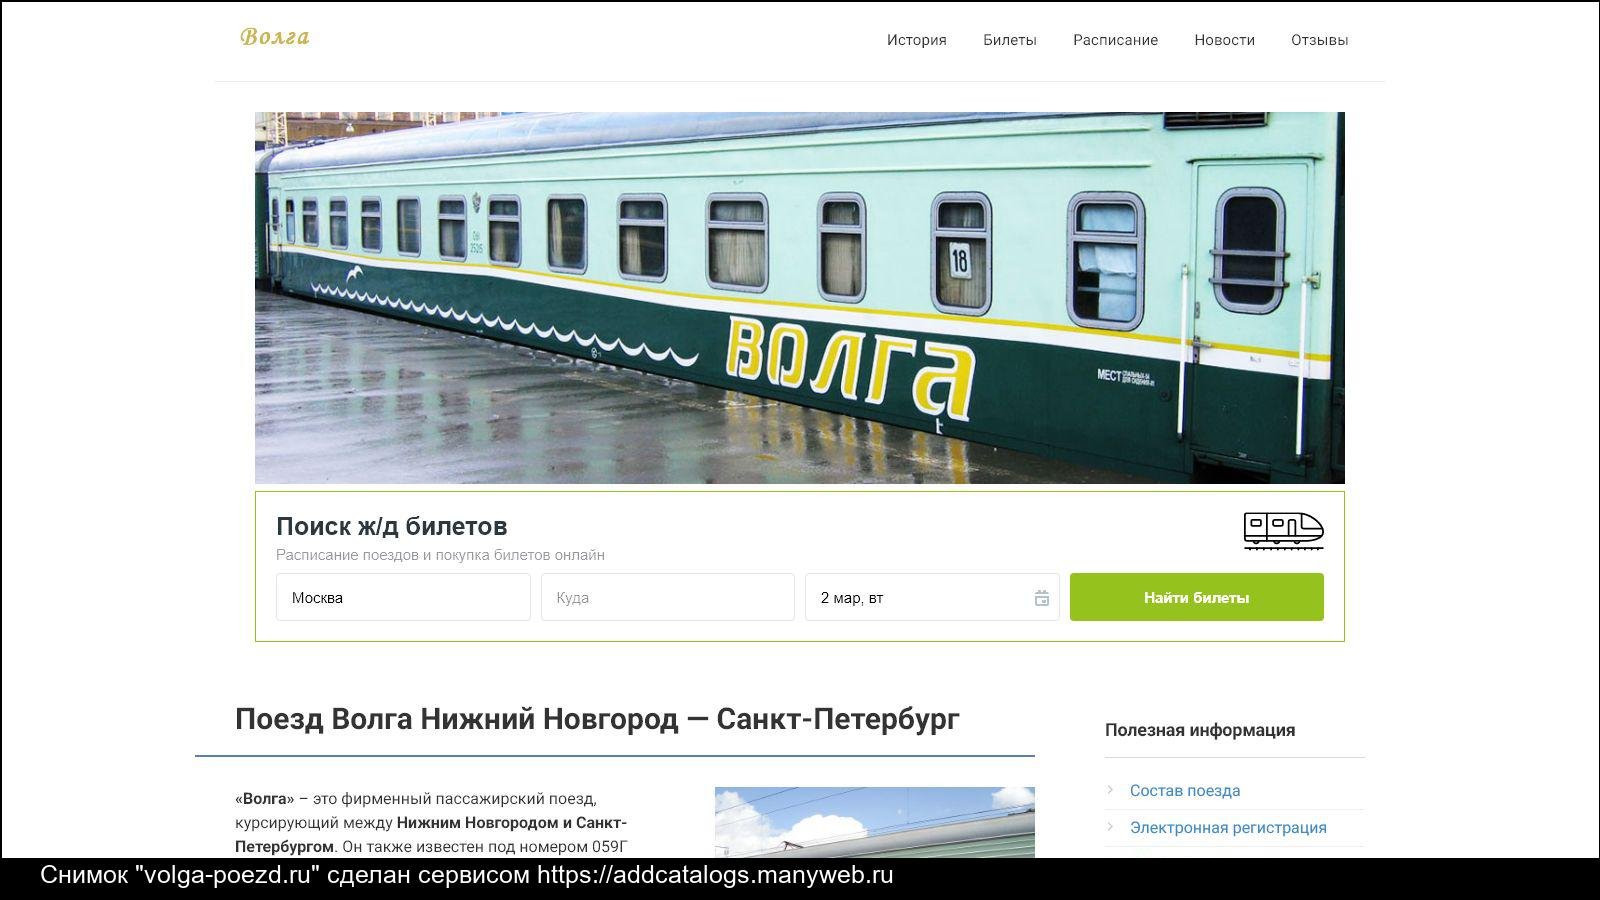 Нижний новгород петербург поезд волга расписание